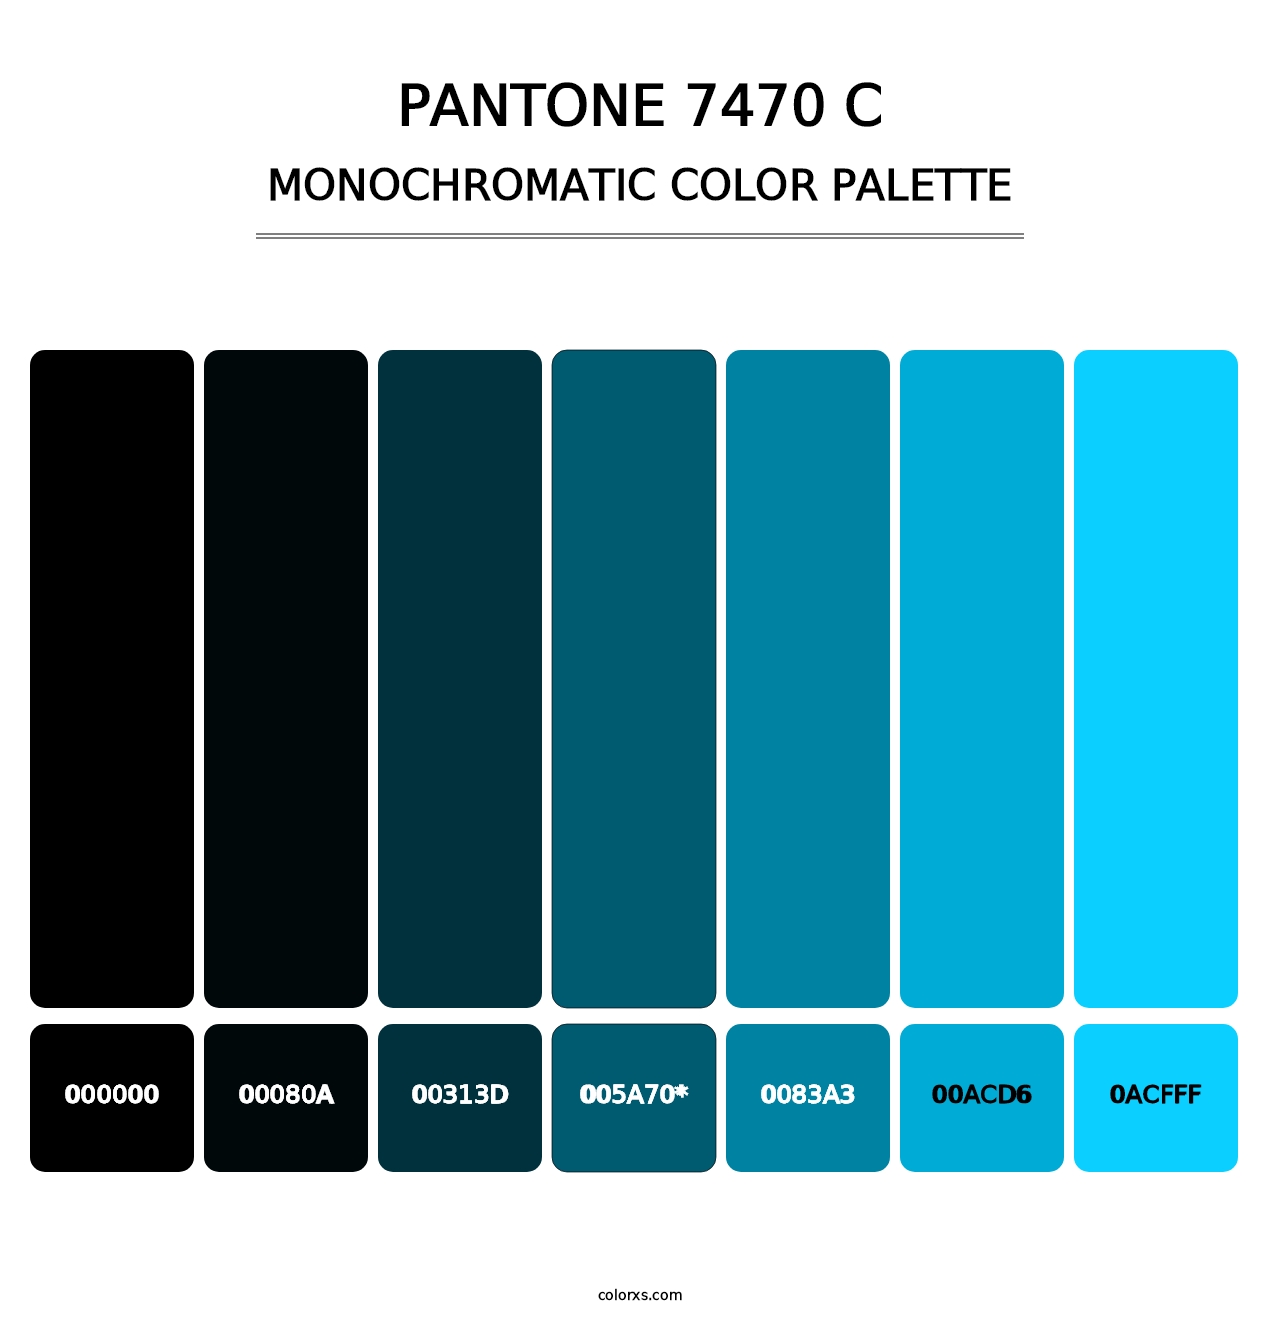 PANTONE 7470 C - Monochromatic Color Palette